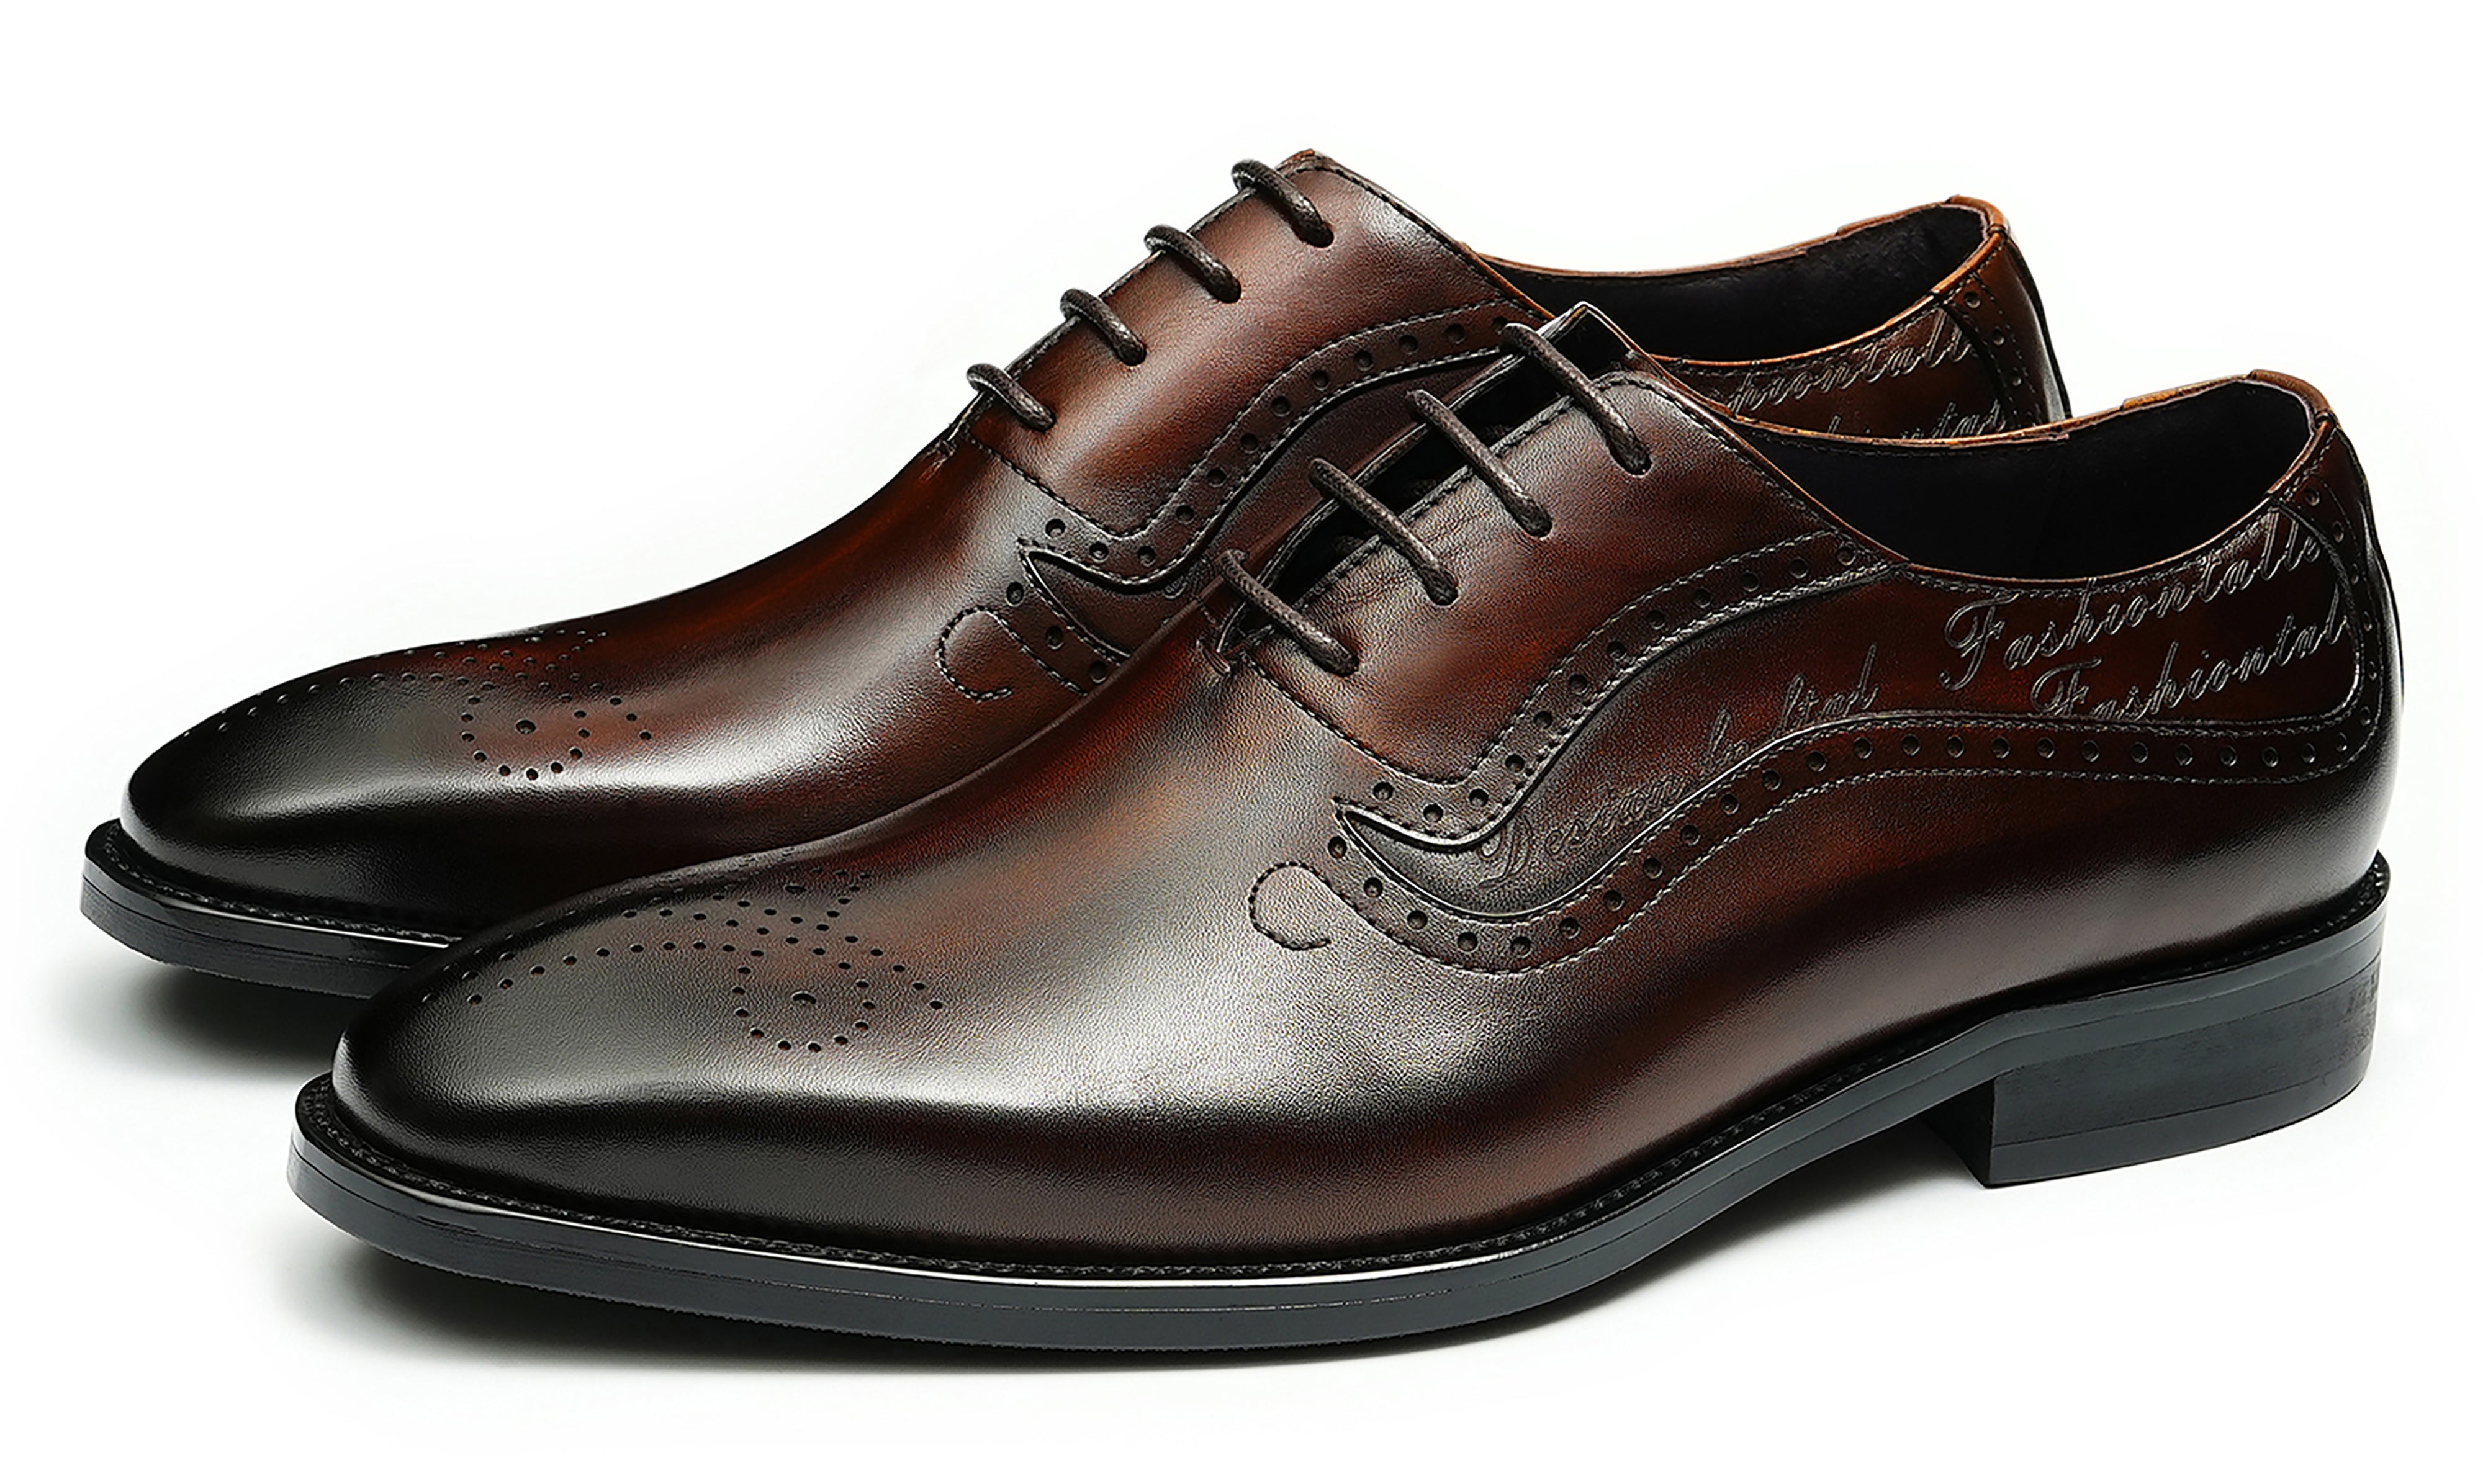 Men's Plain Toe Brogues Oxfords Formal Shoes